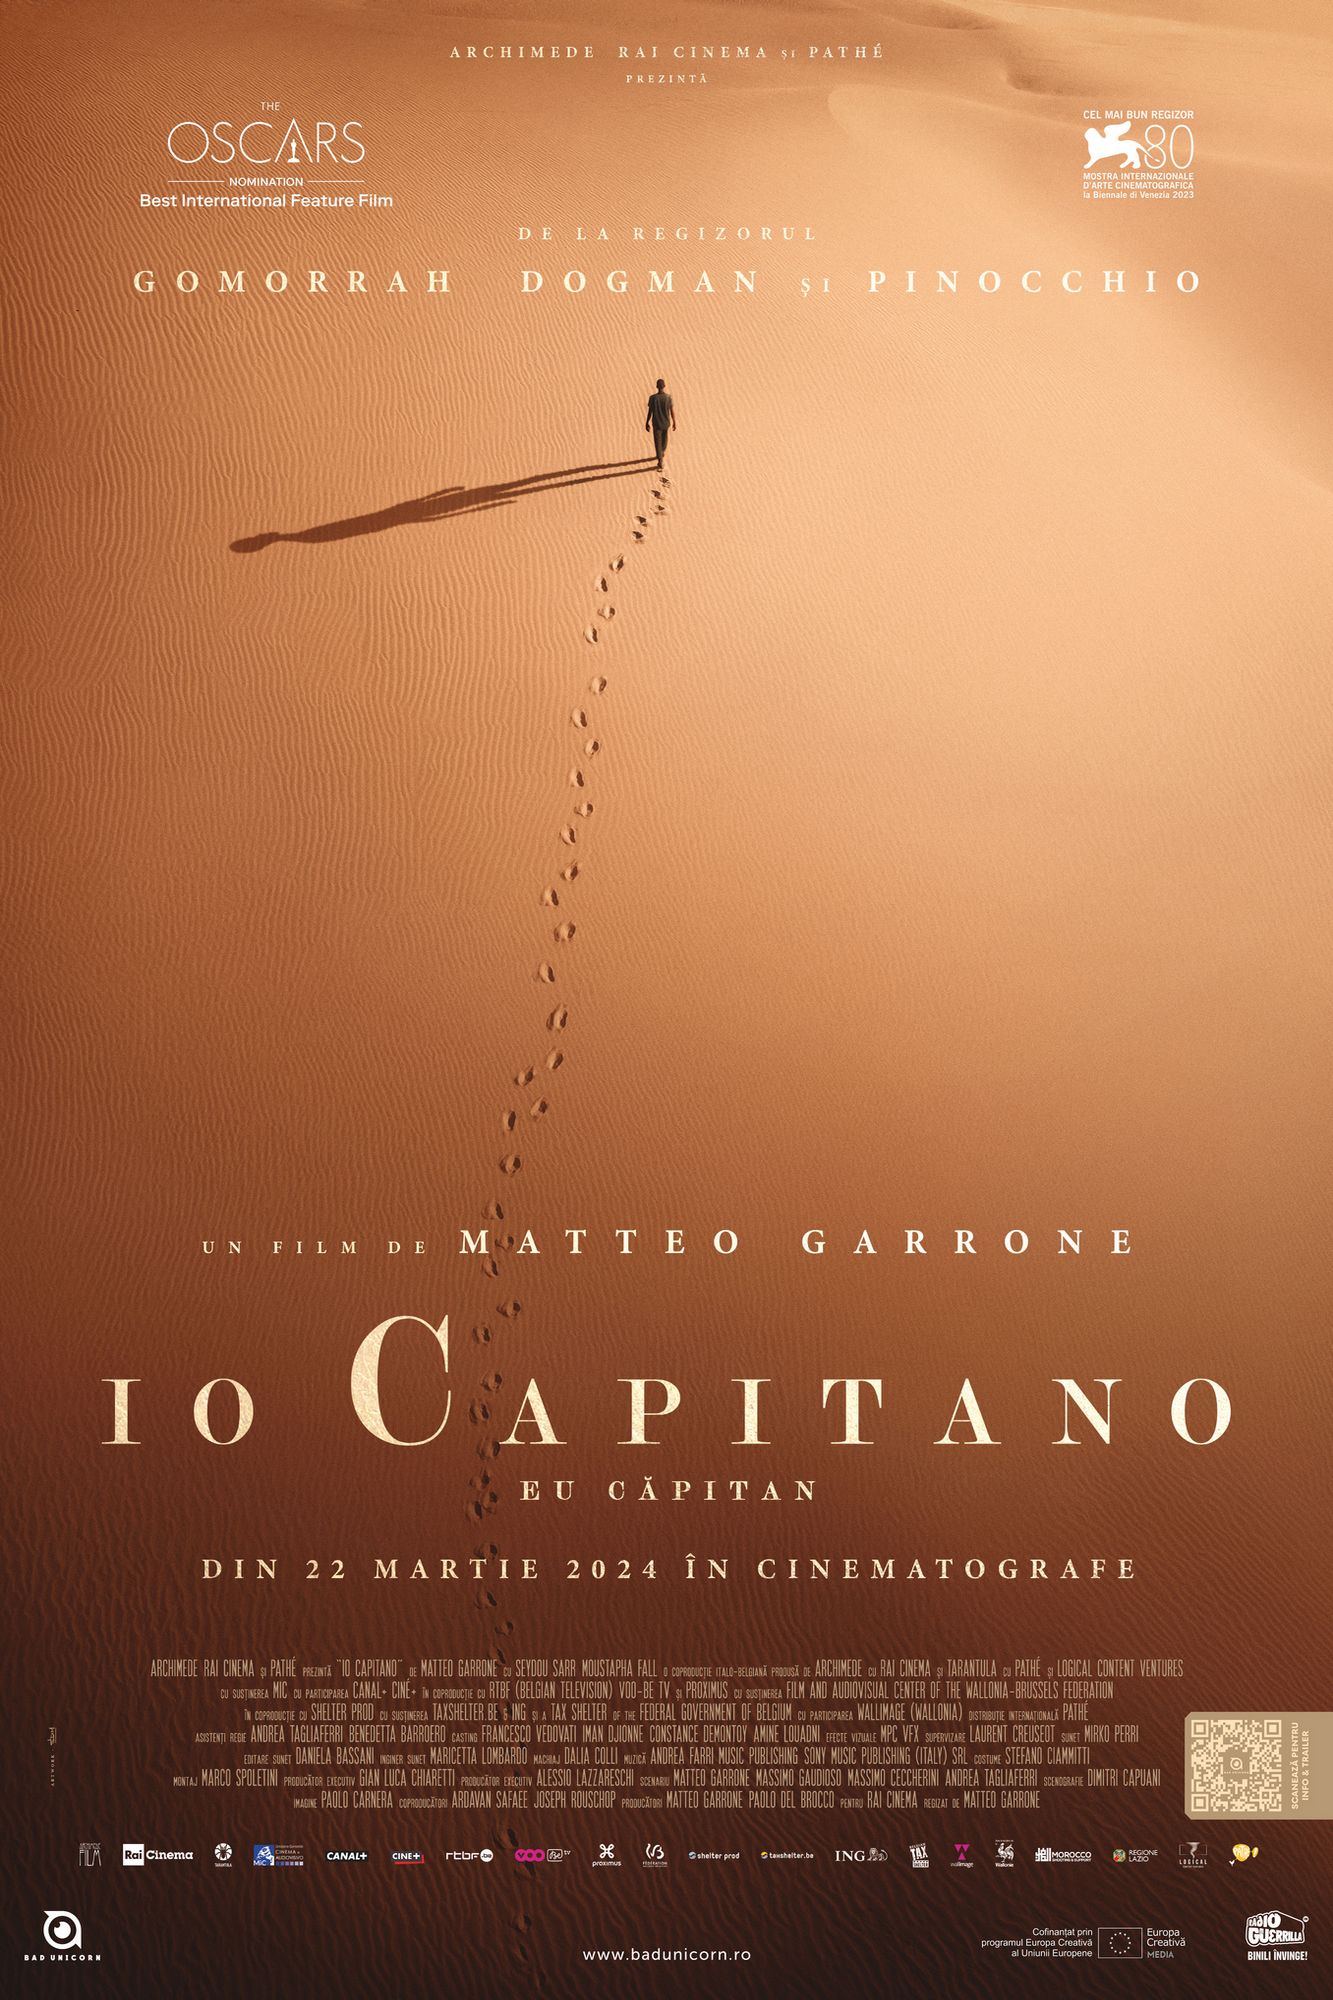 Eu capitan - Io capitano - Visuali Italiane 2024 POSTER